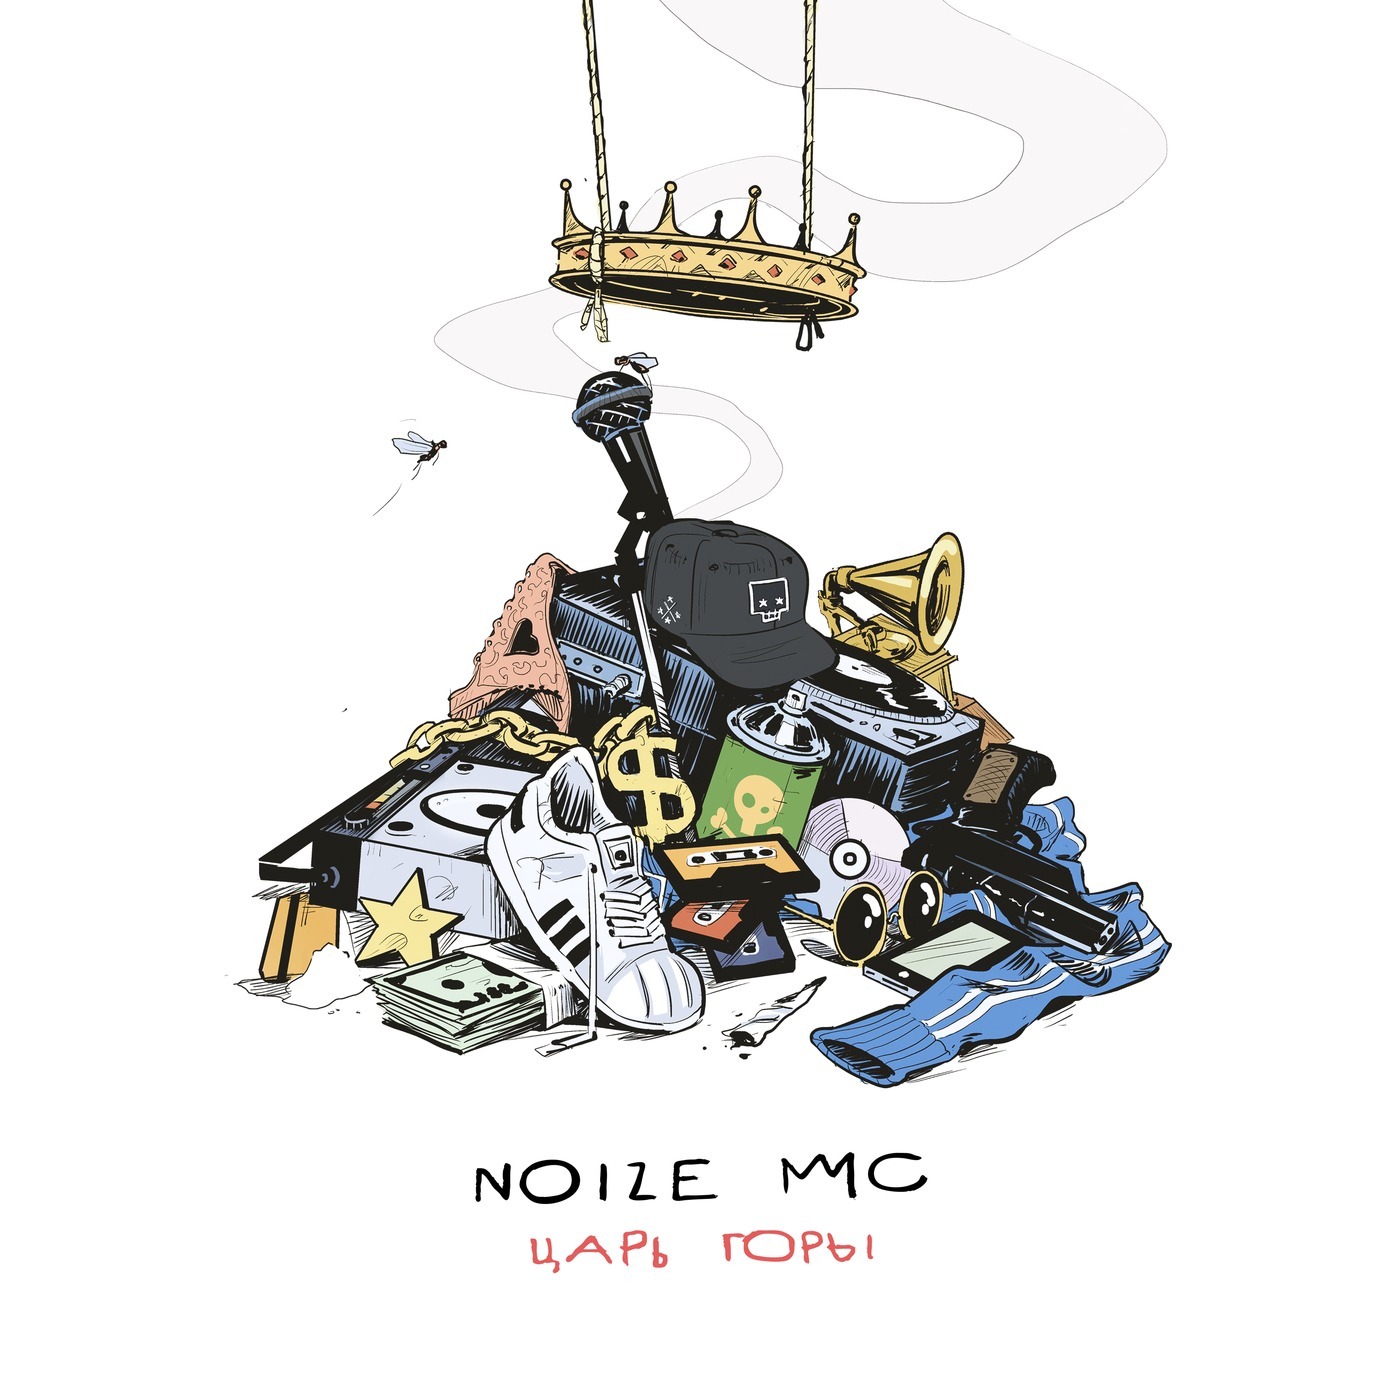 Мс любимому. Noize MC - 2016 - царь горы. Обложка альбома нойз МС царь горы. Noize MC царь горы обложка. Царь горы альбом Noize MC.